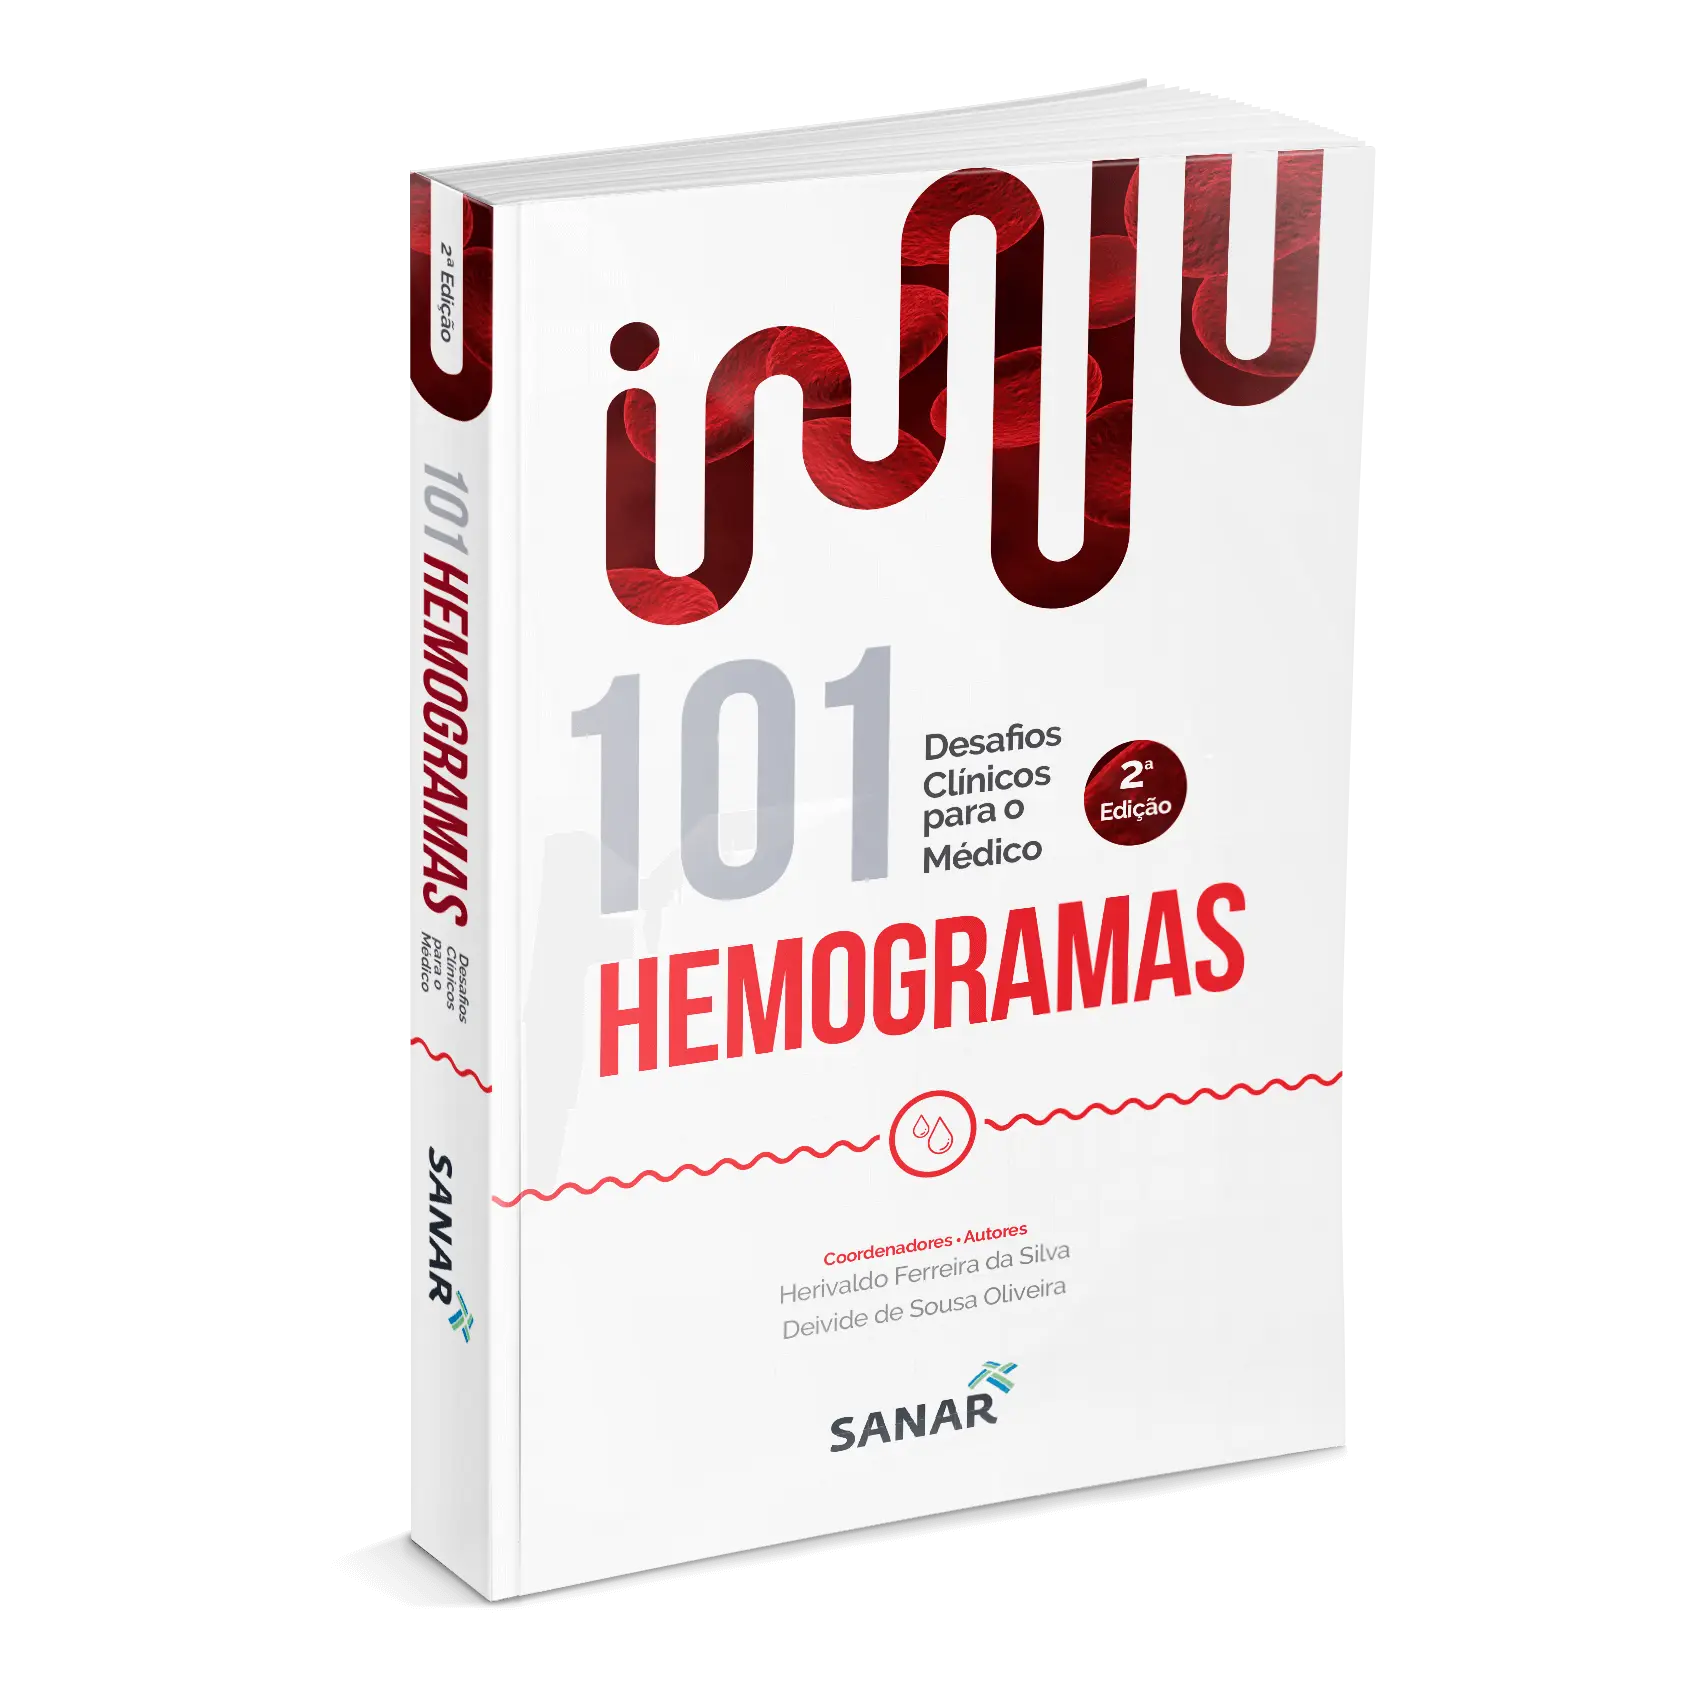 Imagem do livro 101 Hemogramas: Desafios Clínicos para o Médico (2ª edição)